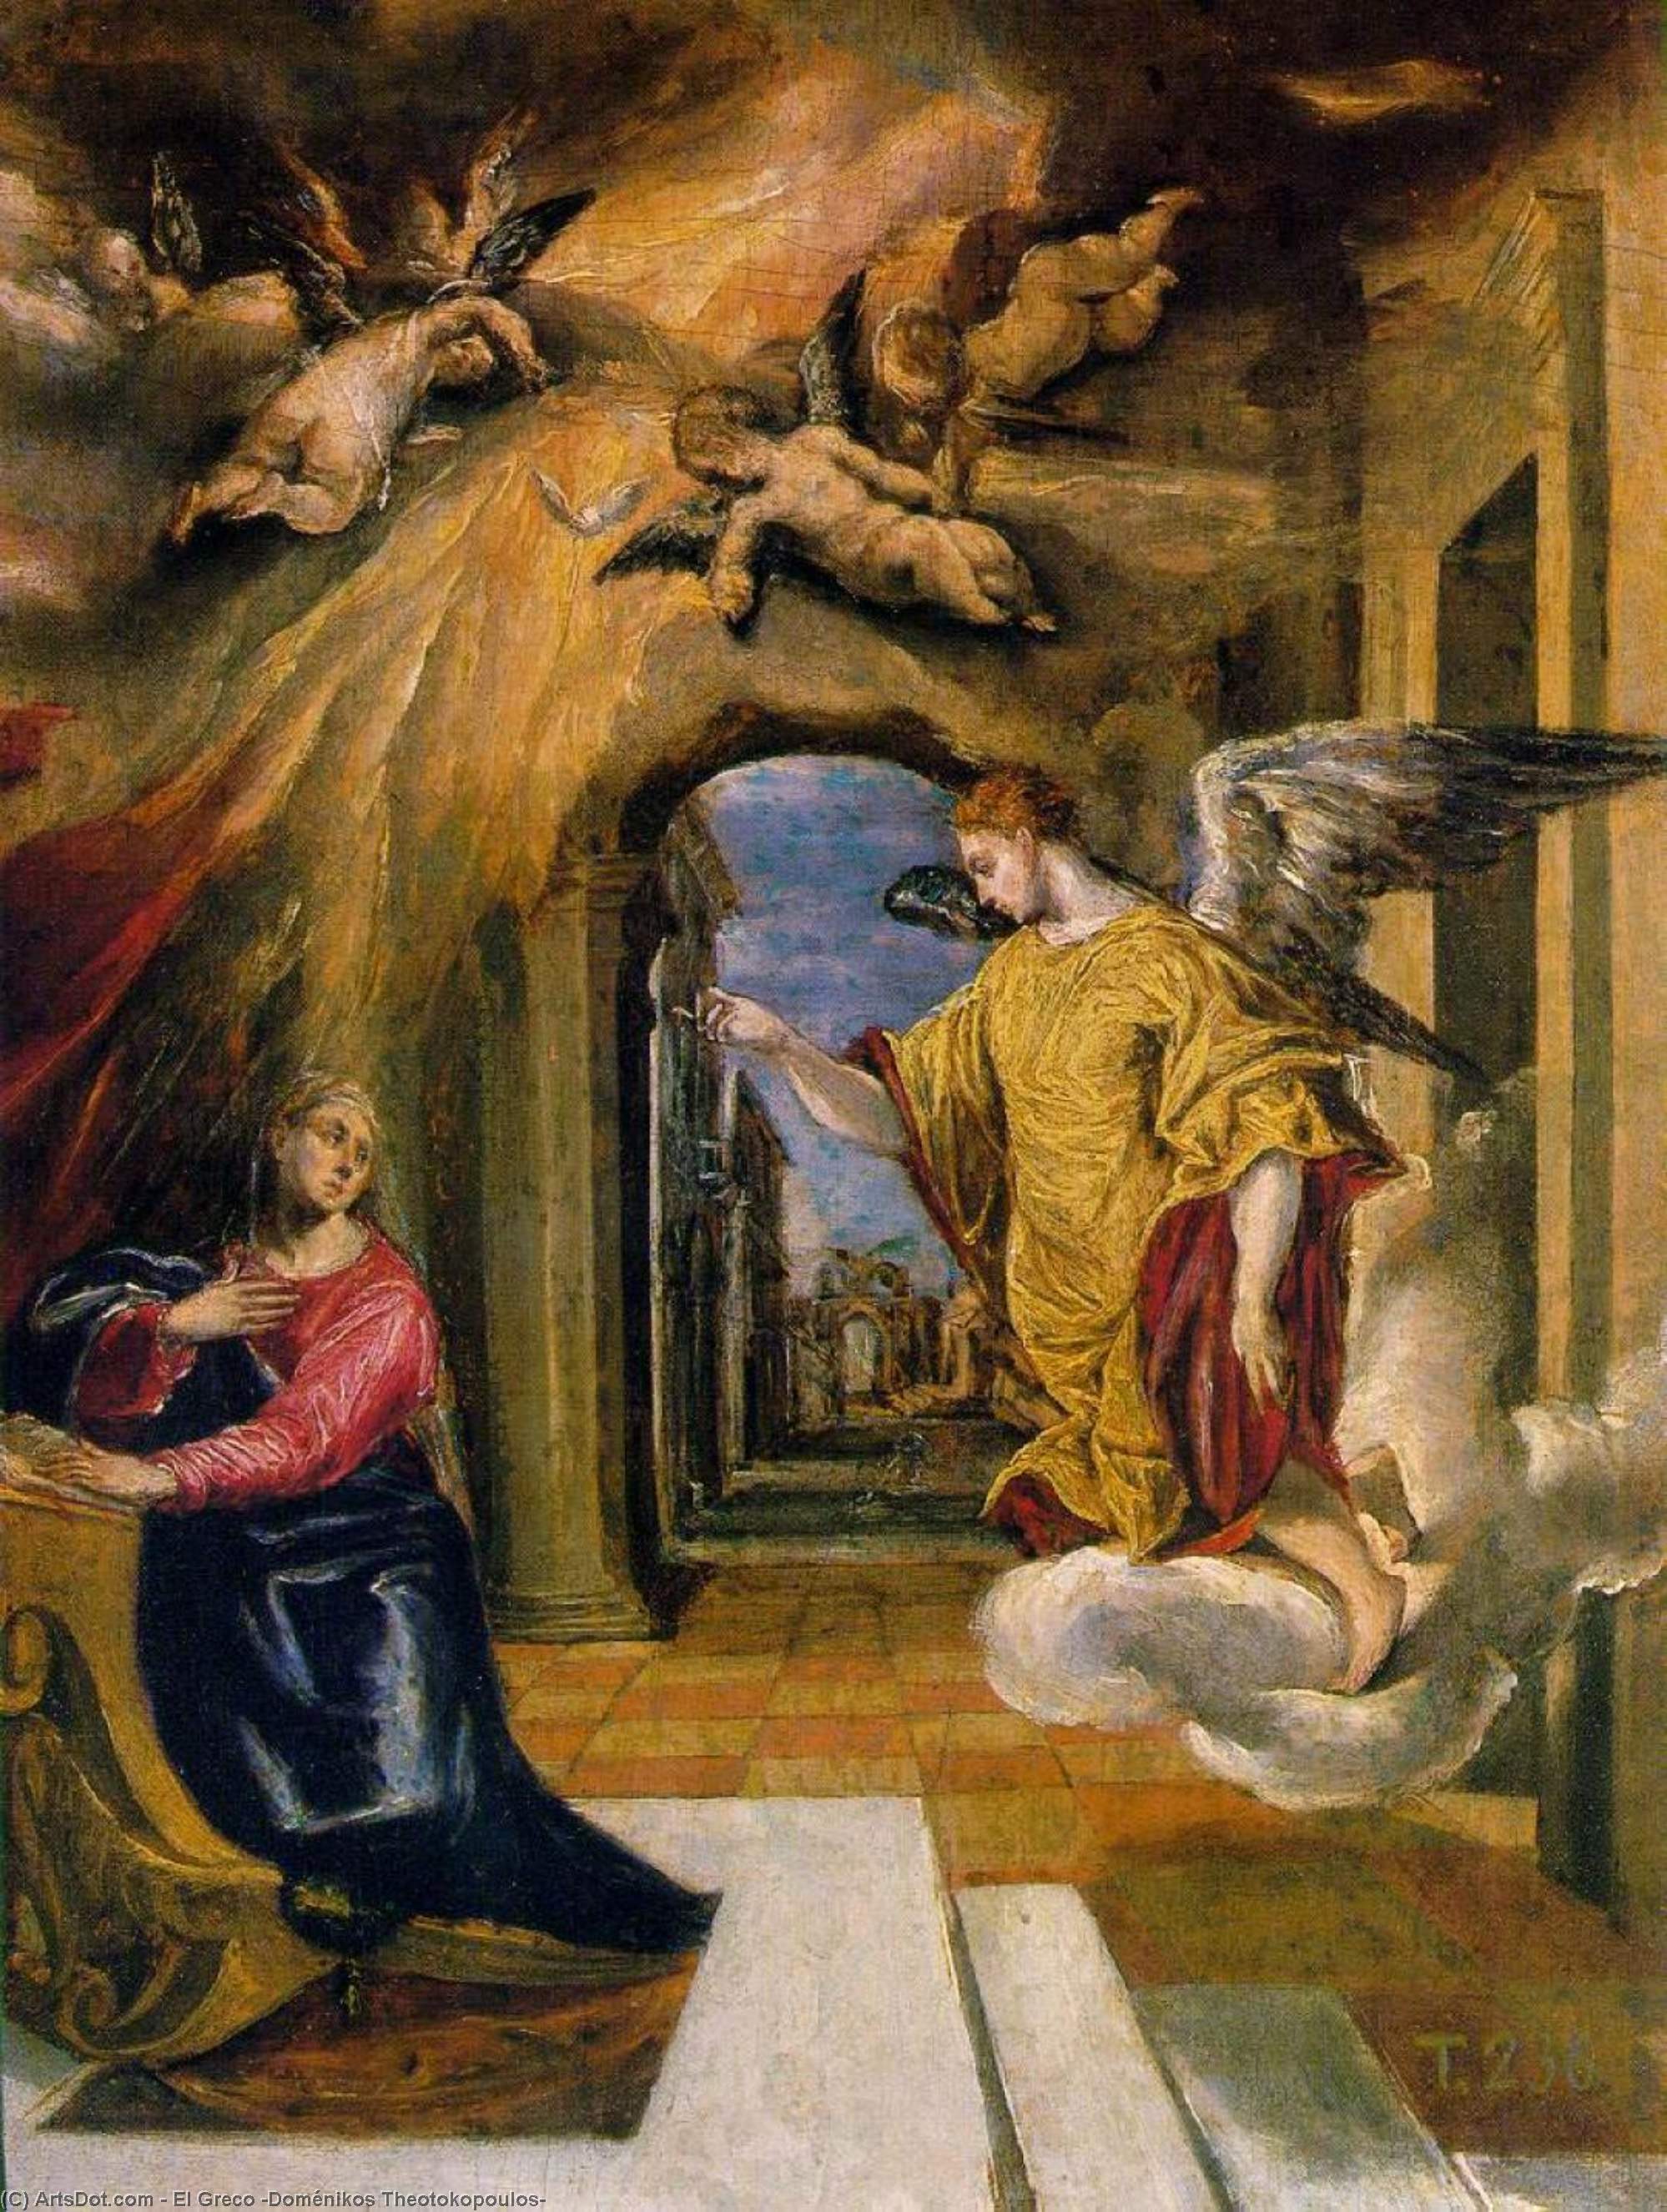 WikiOO.org - Encyclopedia of Fine Arts - Festés, Grafika El Greco (Doménikos Theotokopoulos) - The Annunciation